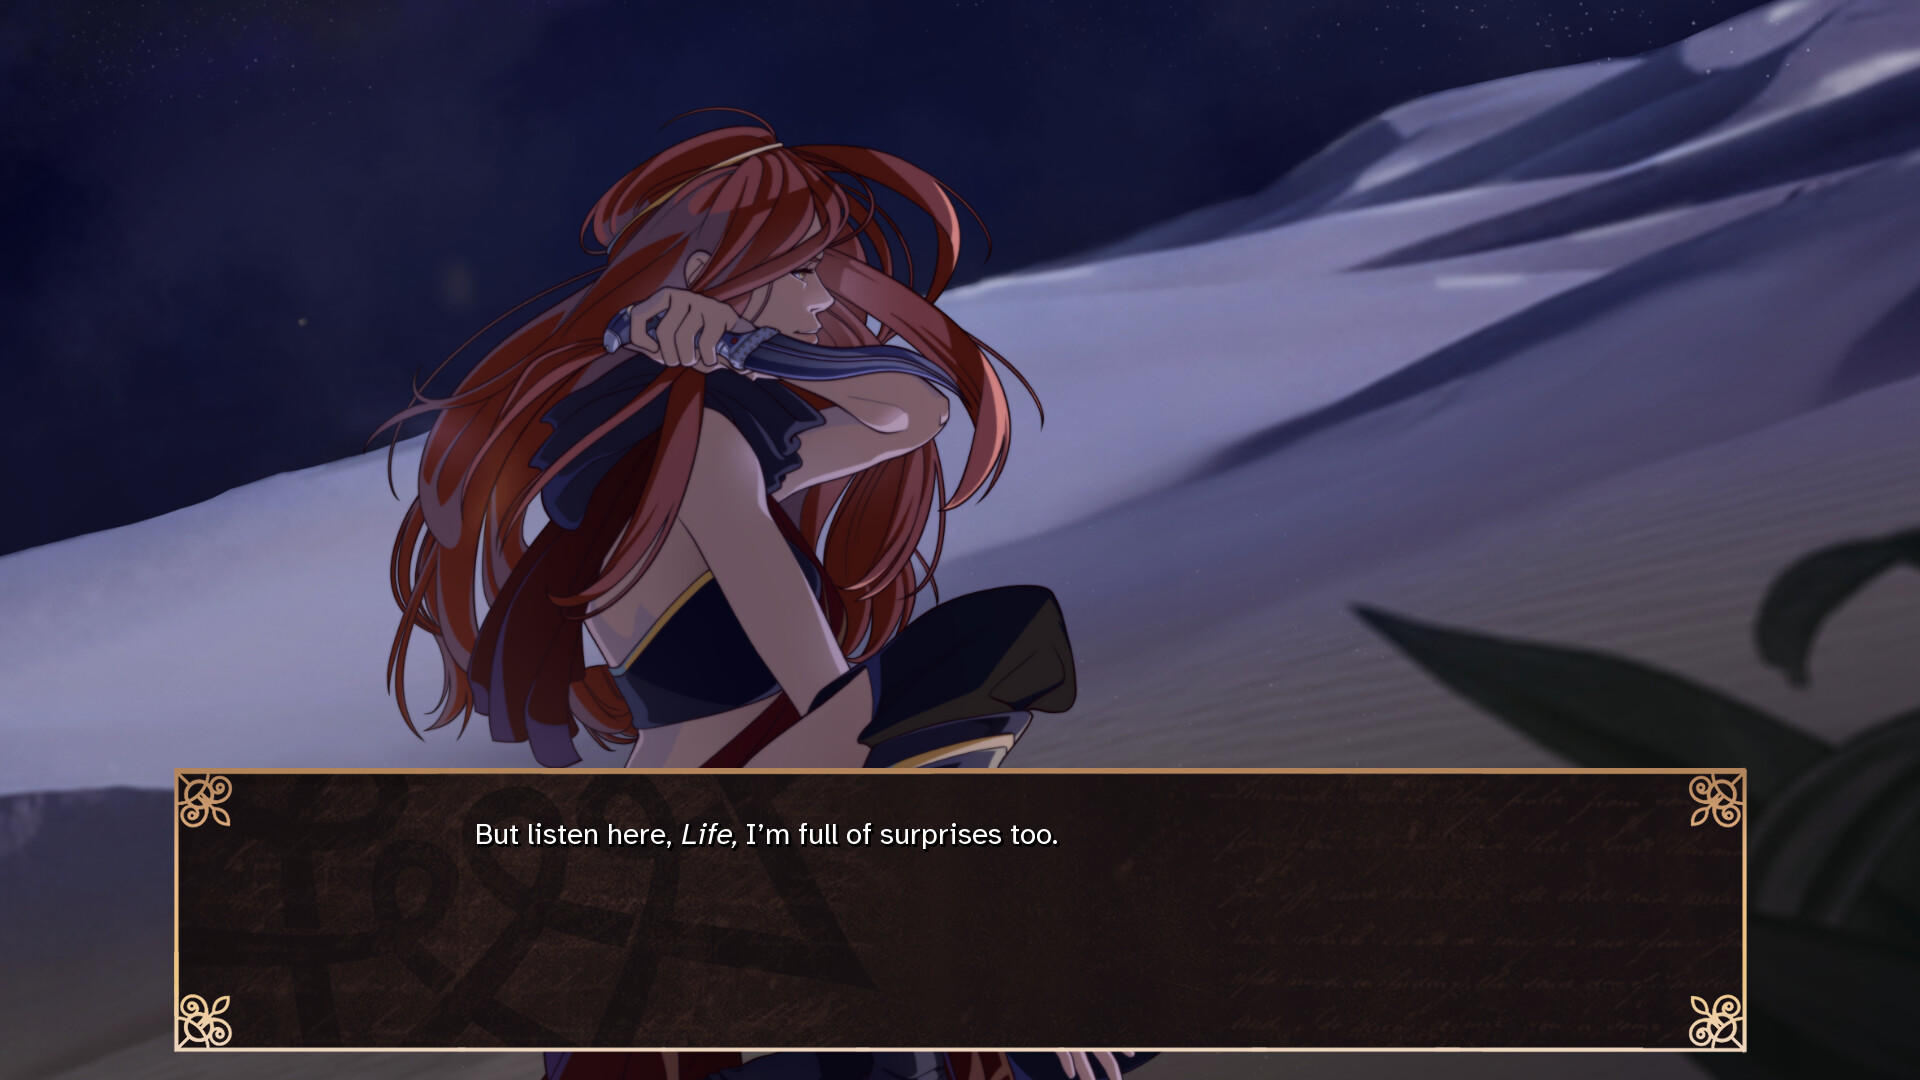 Screenshot of Garden of Seif: Chronicles of an Assassin